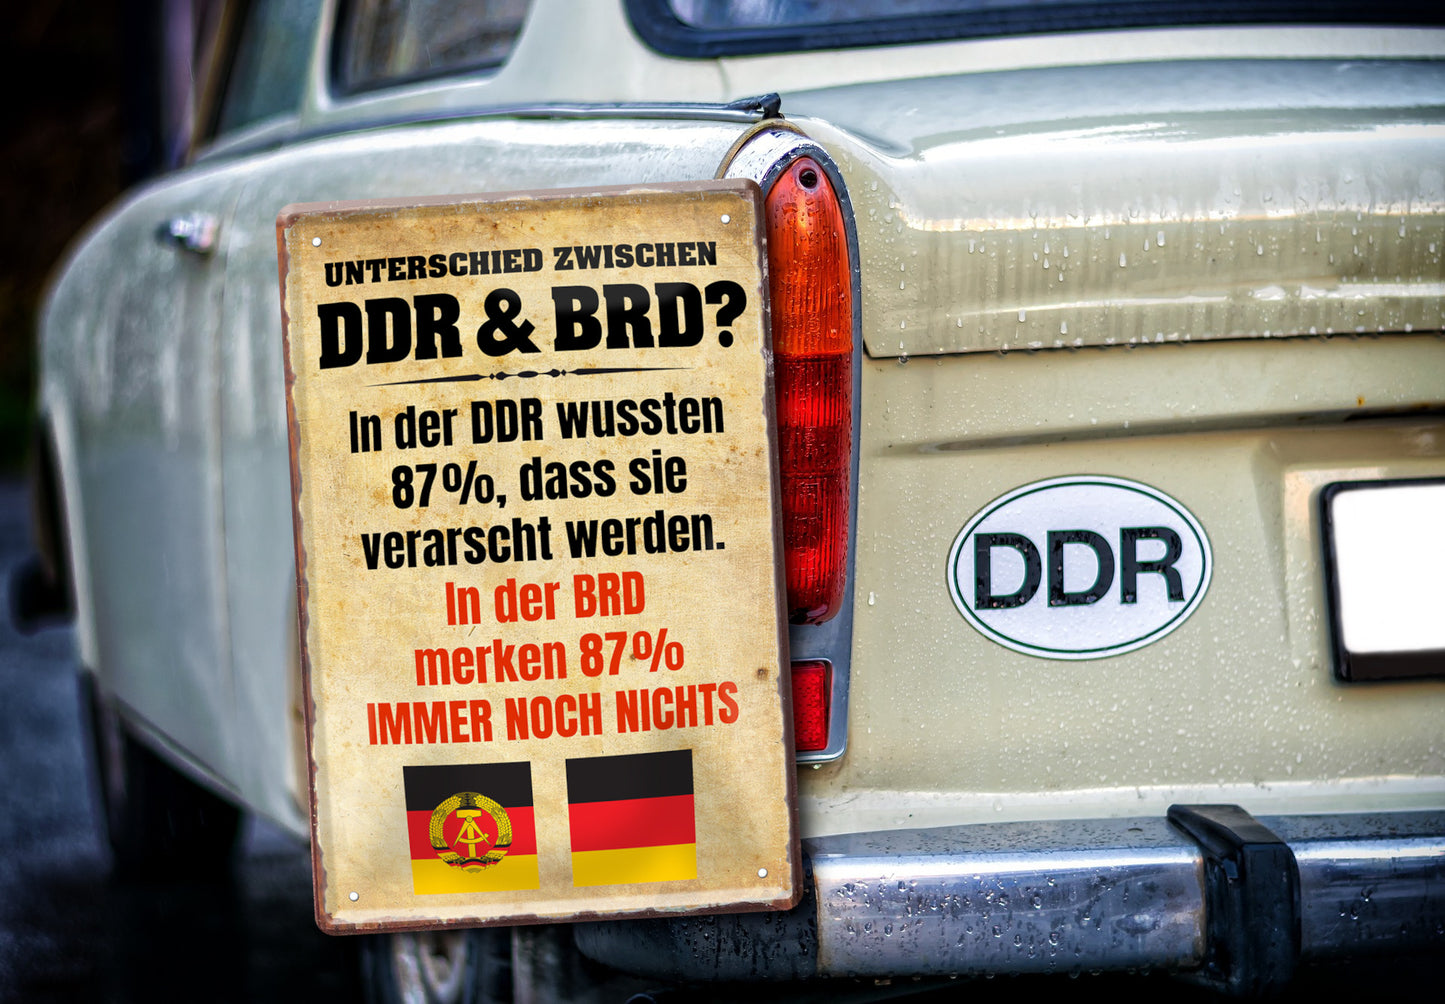 Blechschild ''Unterschied zwischen DDR & BRD'' 20x30cm